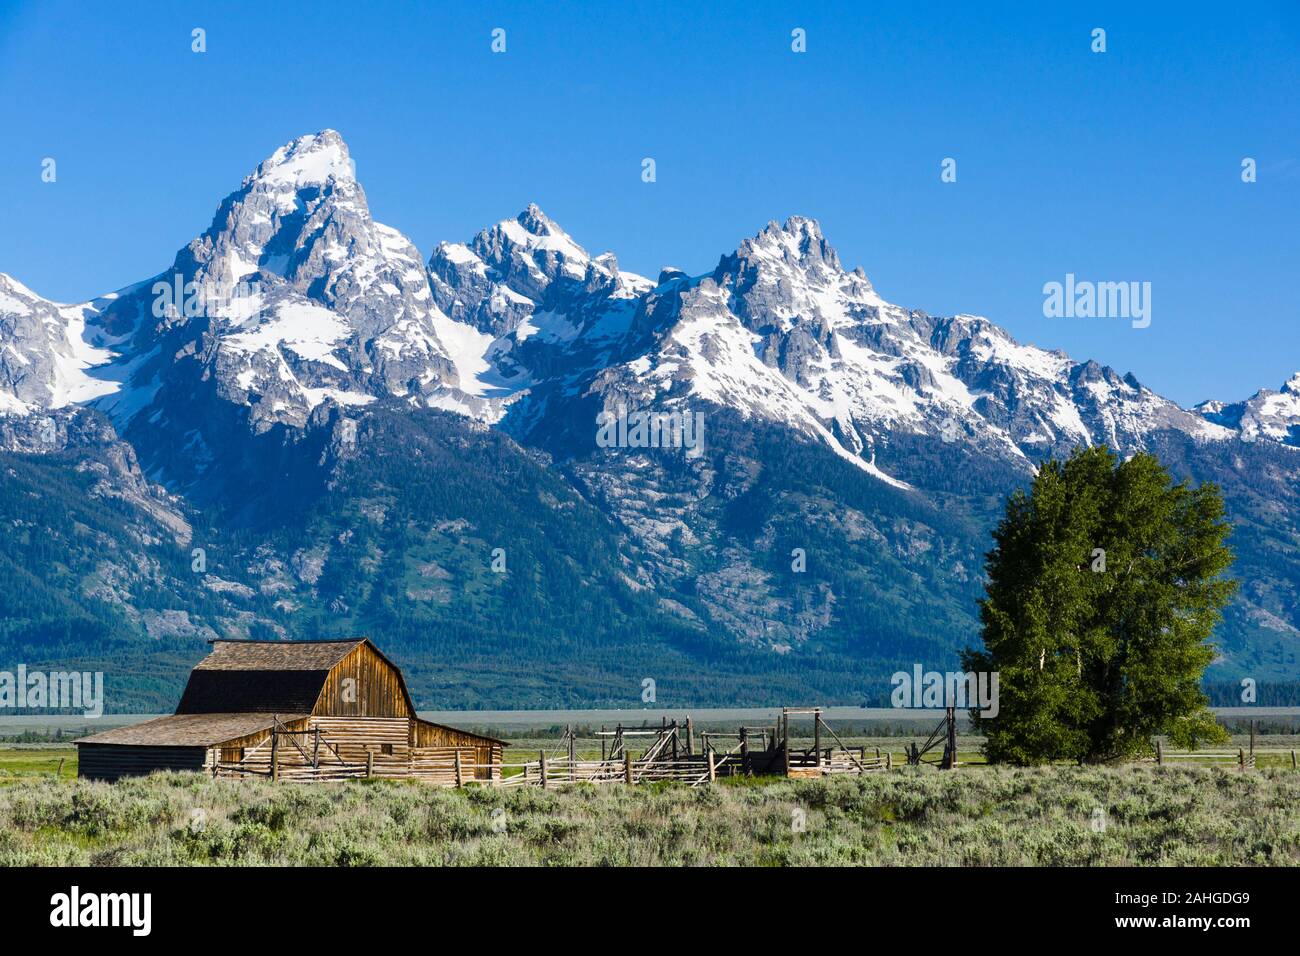 Mormon Row Historic District, Teton County, Wyoming, United States Stock Photo